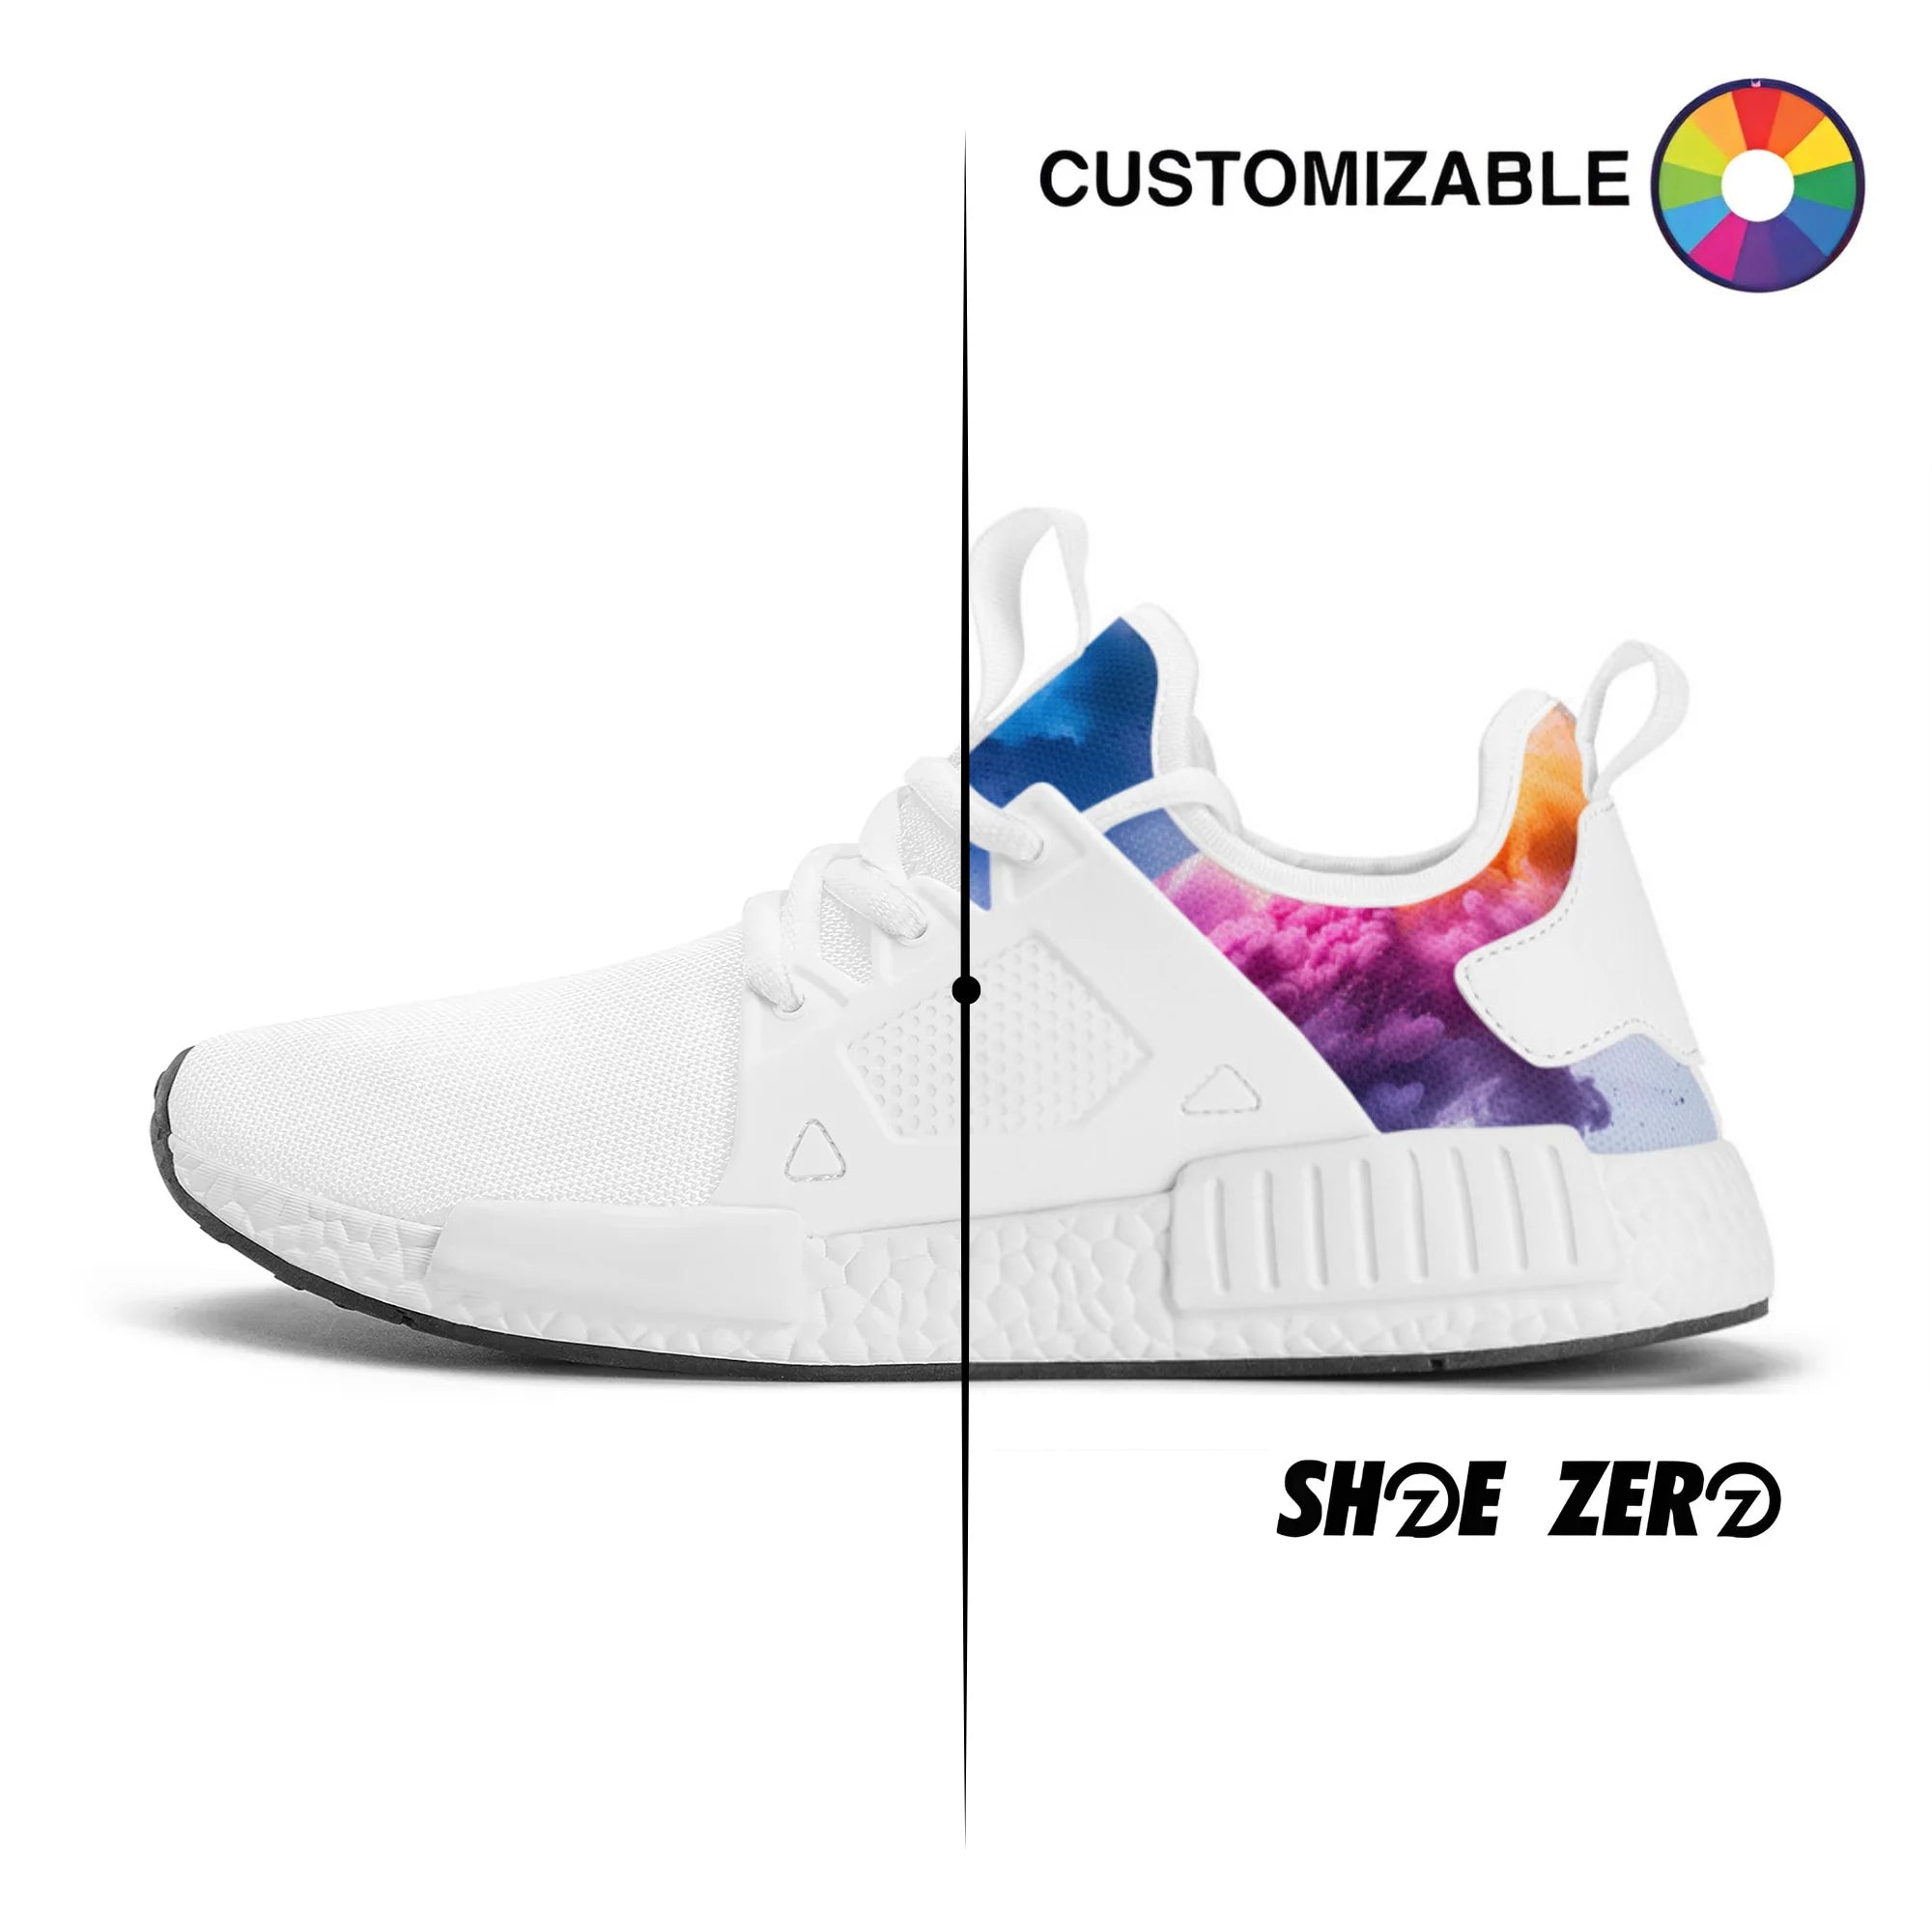 Customizable Zero Impact Foam Low Top Shoe